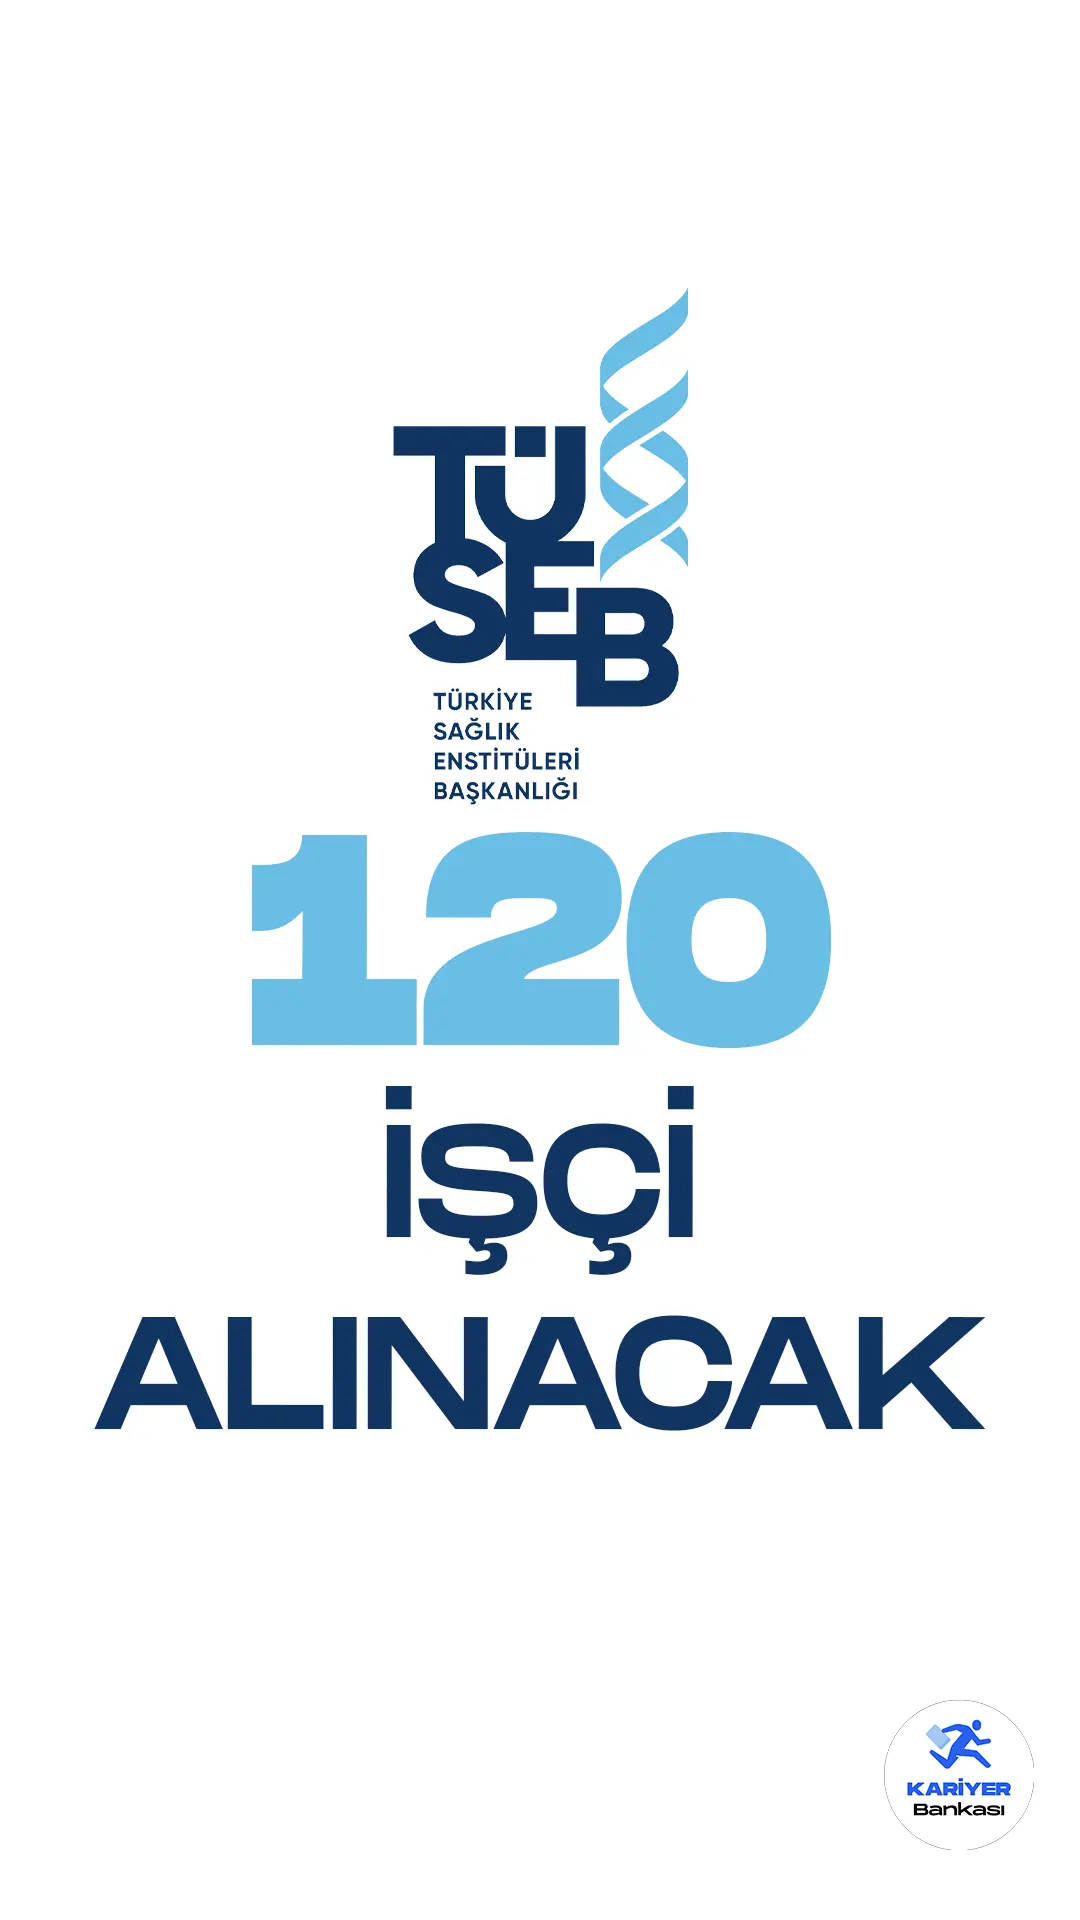 Türkiye Sağlık Enstitüleri Başkanlığı (TÜSEB) işçi alımı başvuruları 12 Haziran'da başlıyor. Cumhurbaşkanlığı SBB'de yayımlanan duyuruya göre, TÜSEB'e V.H.K.İ, biyolog, mütercim-tercüman, avukat, istatistikçi, kimyager, programcı, şoför, tekniker, mühendis unvanlarında toplamda 120 sürekli işçi alımı yapılacak.